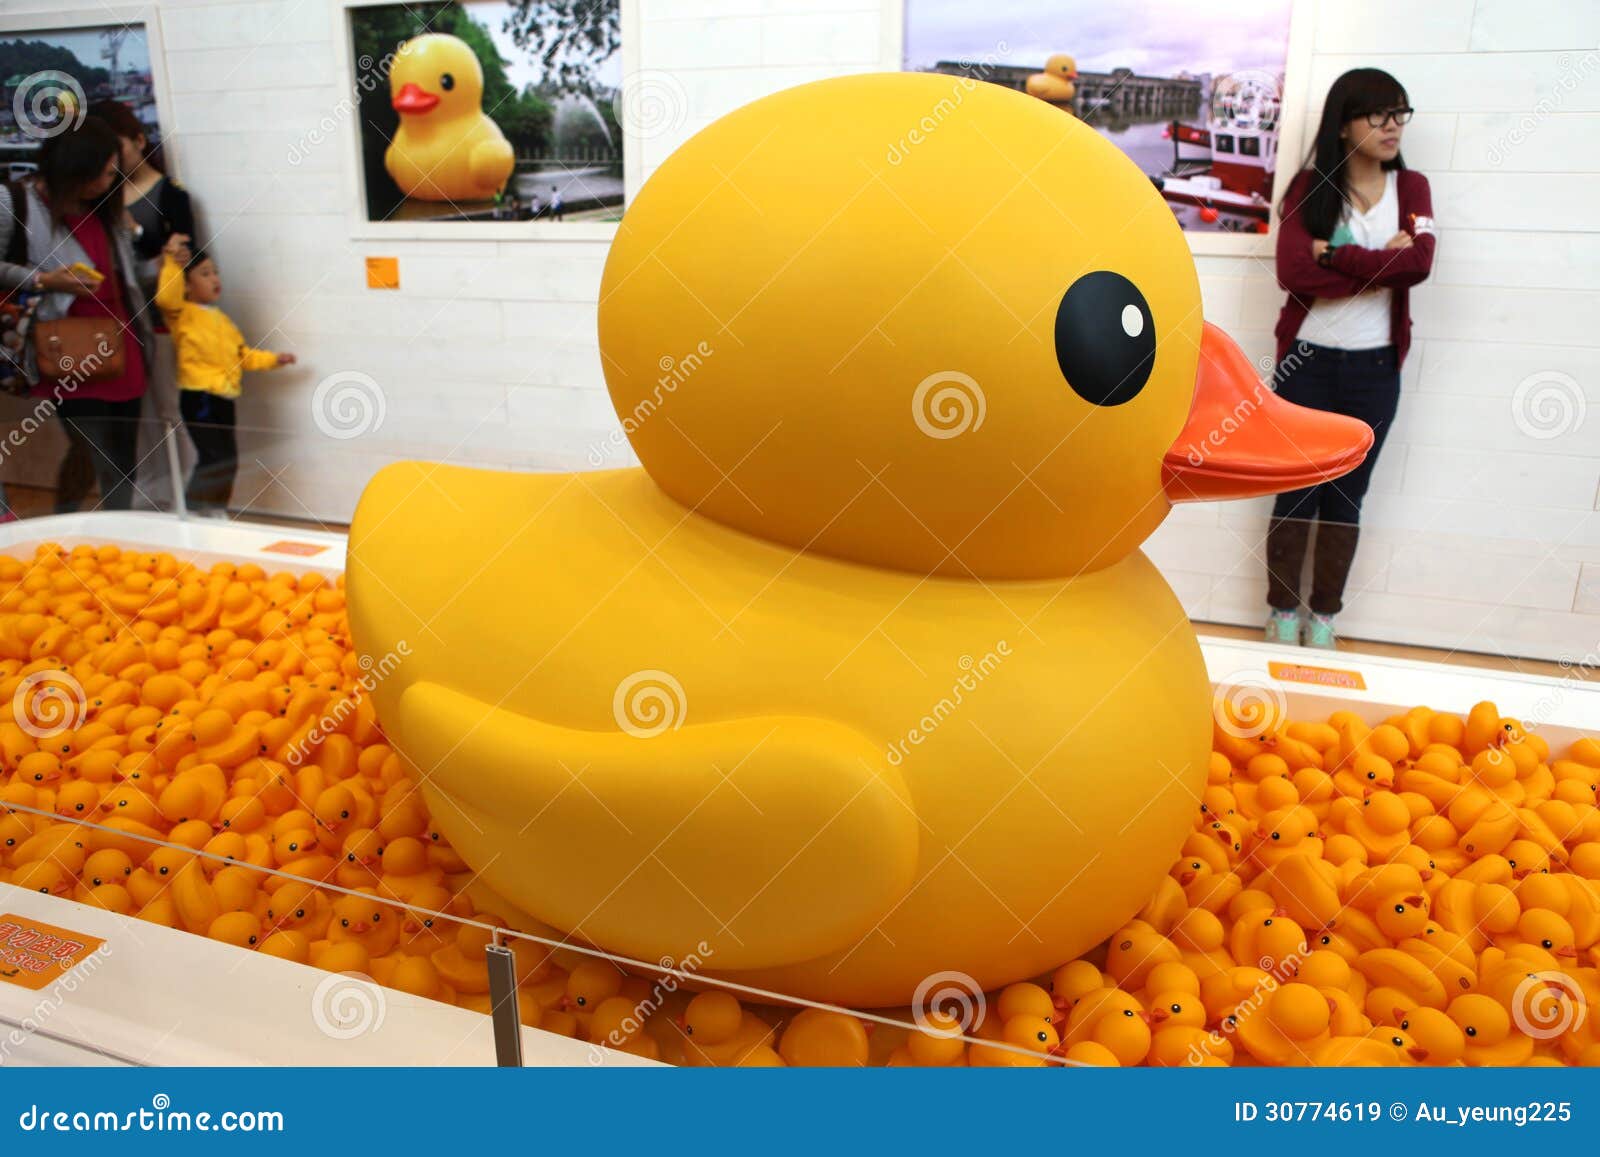 Duck Project di gomma in Hong Kong. Duck Project di gomma di Florentijn Hofman in Hong Kong, il 2 maggio - 9 giugno nel 2013